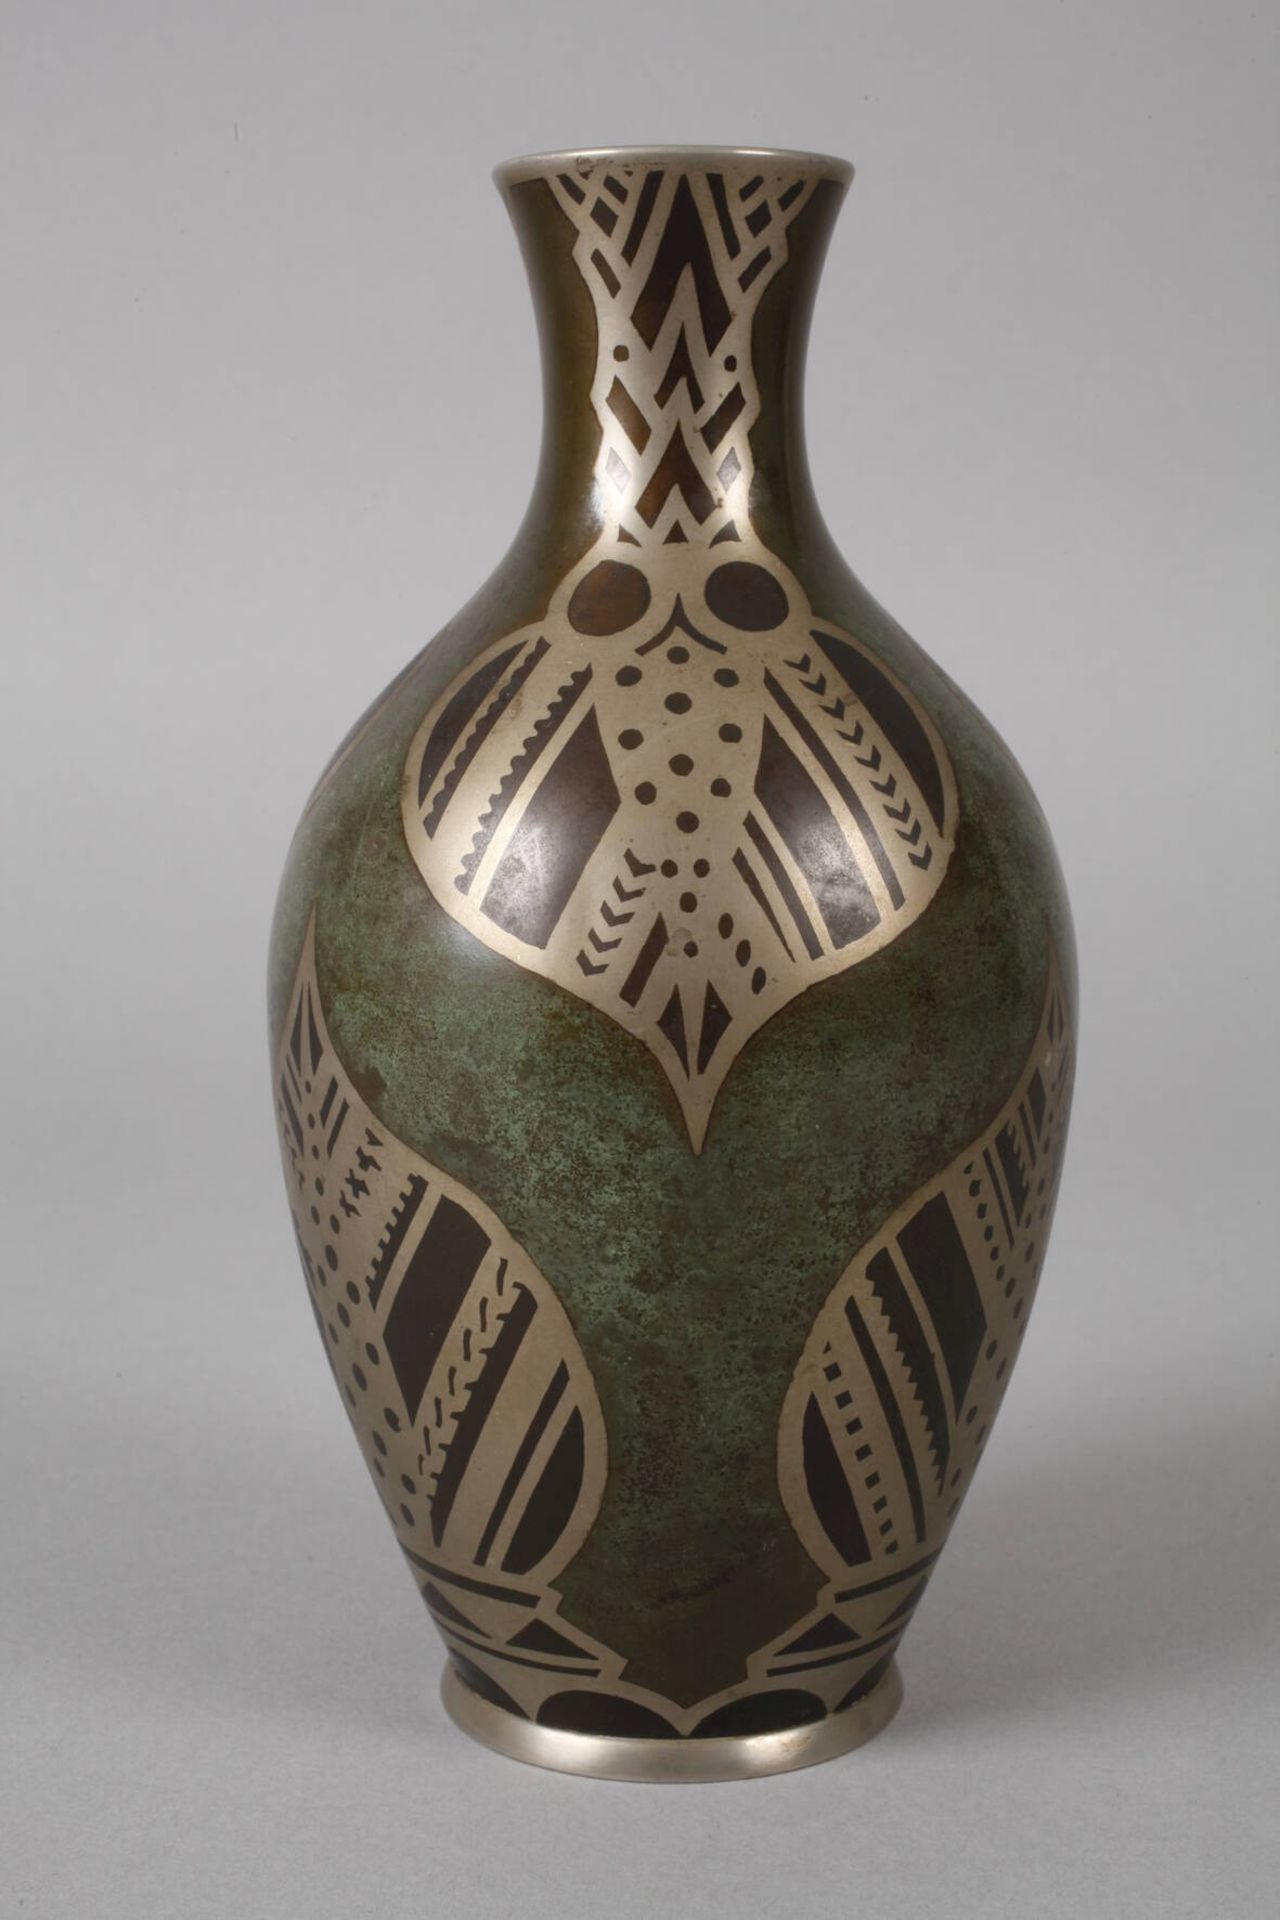 WMF Ikora Vase um 1925, Prägemarken, Metall patiniert, verziert mit stilisierten Blattmotiven, - Bild 2 aus 4